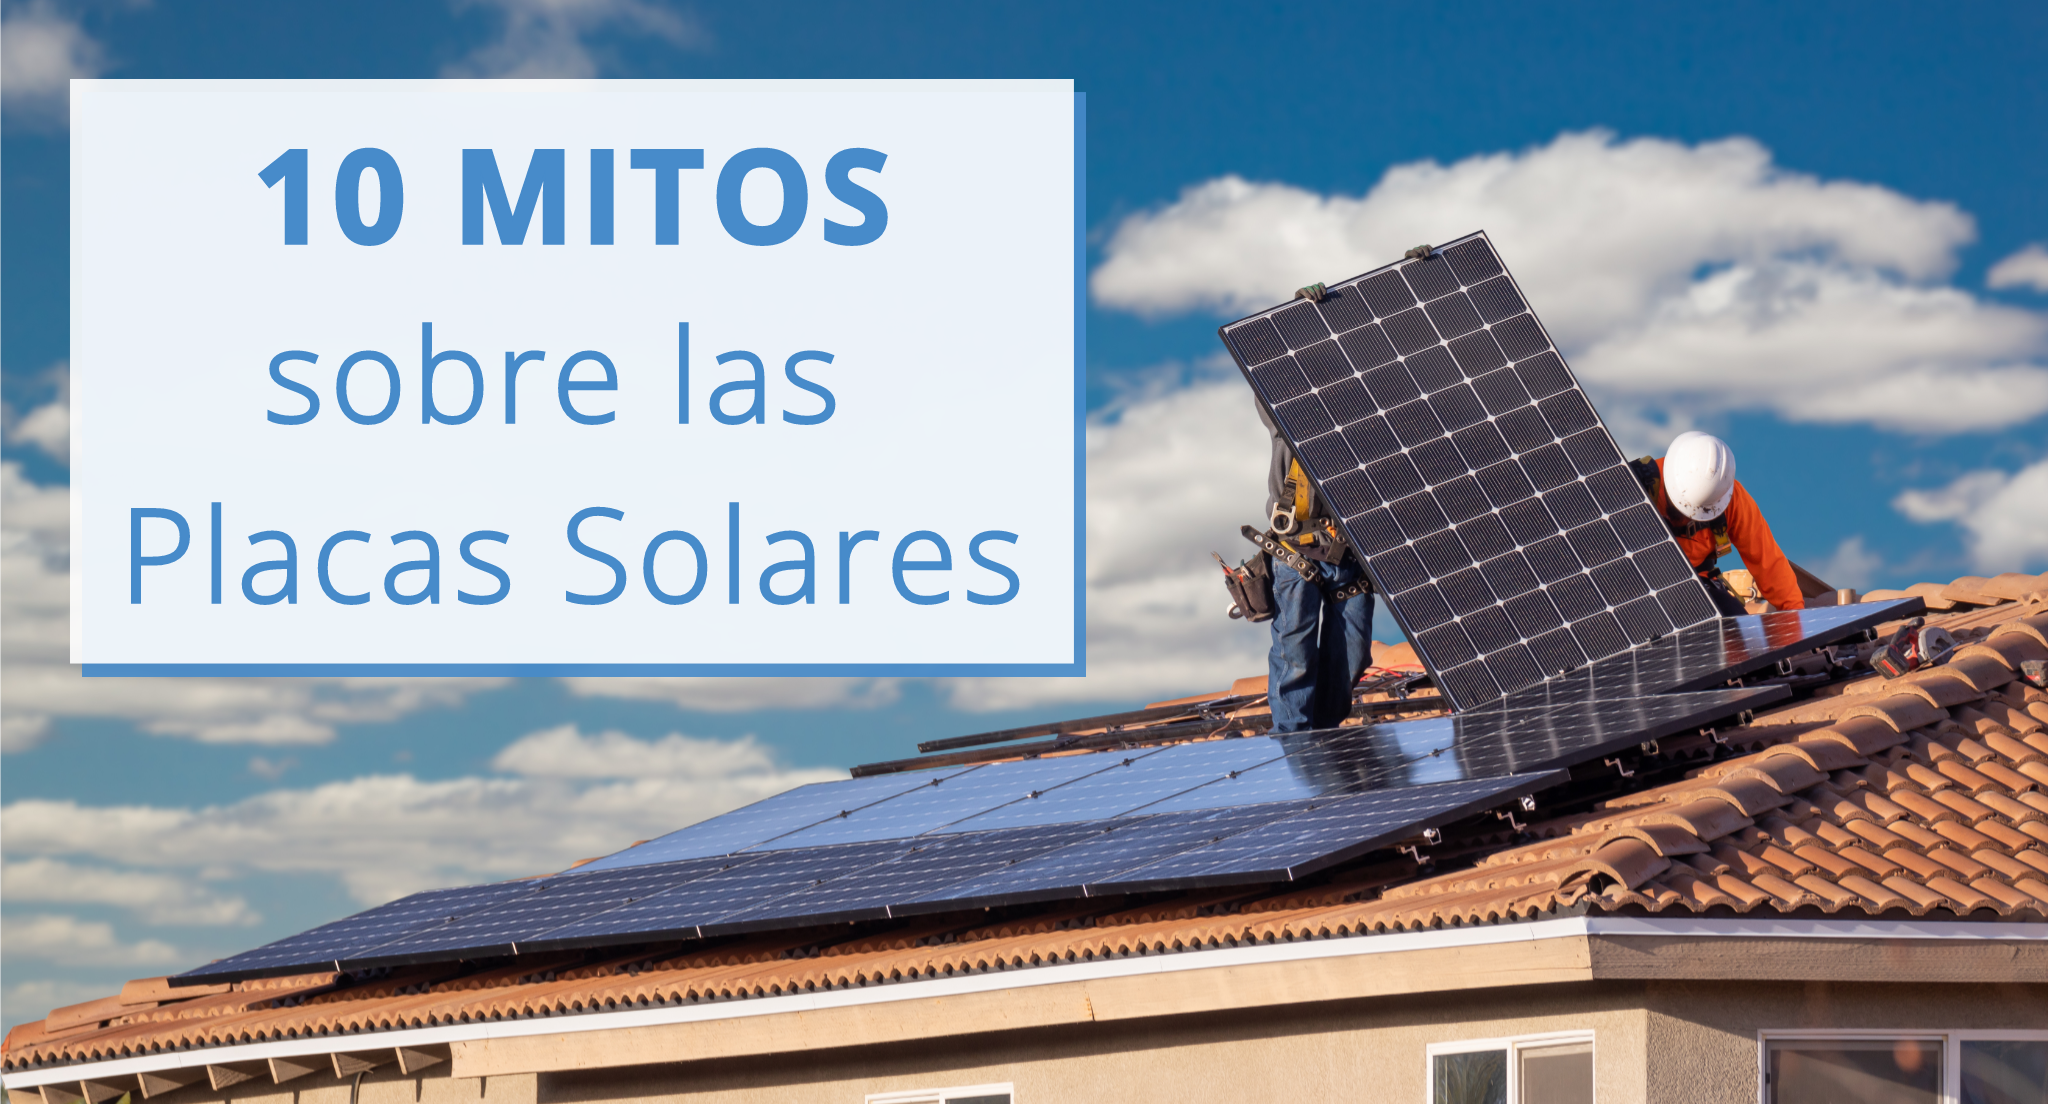 10 Mitos sobre las placas solares